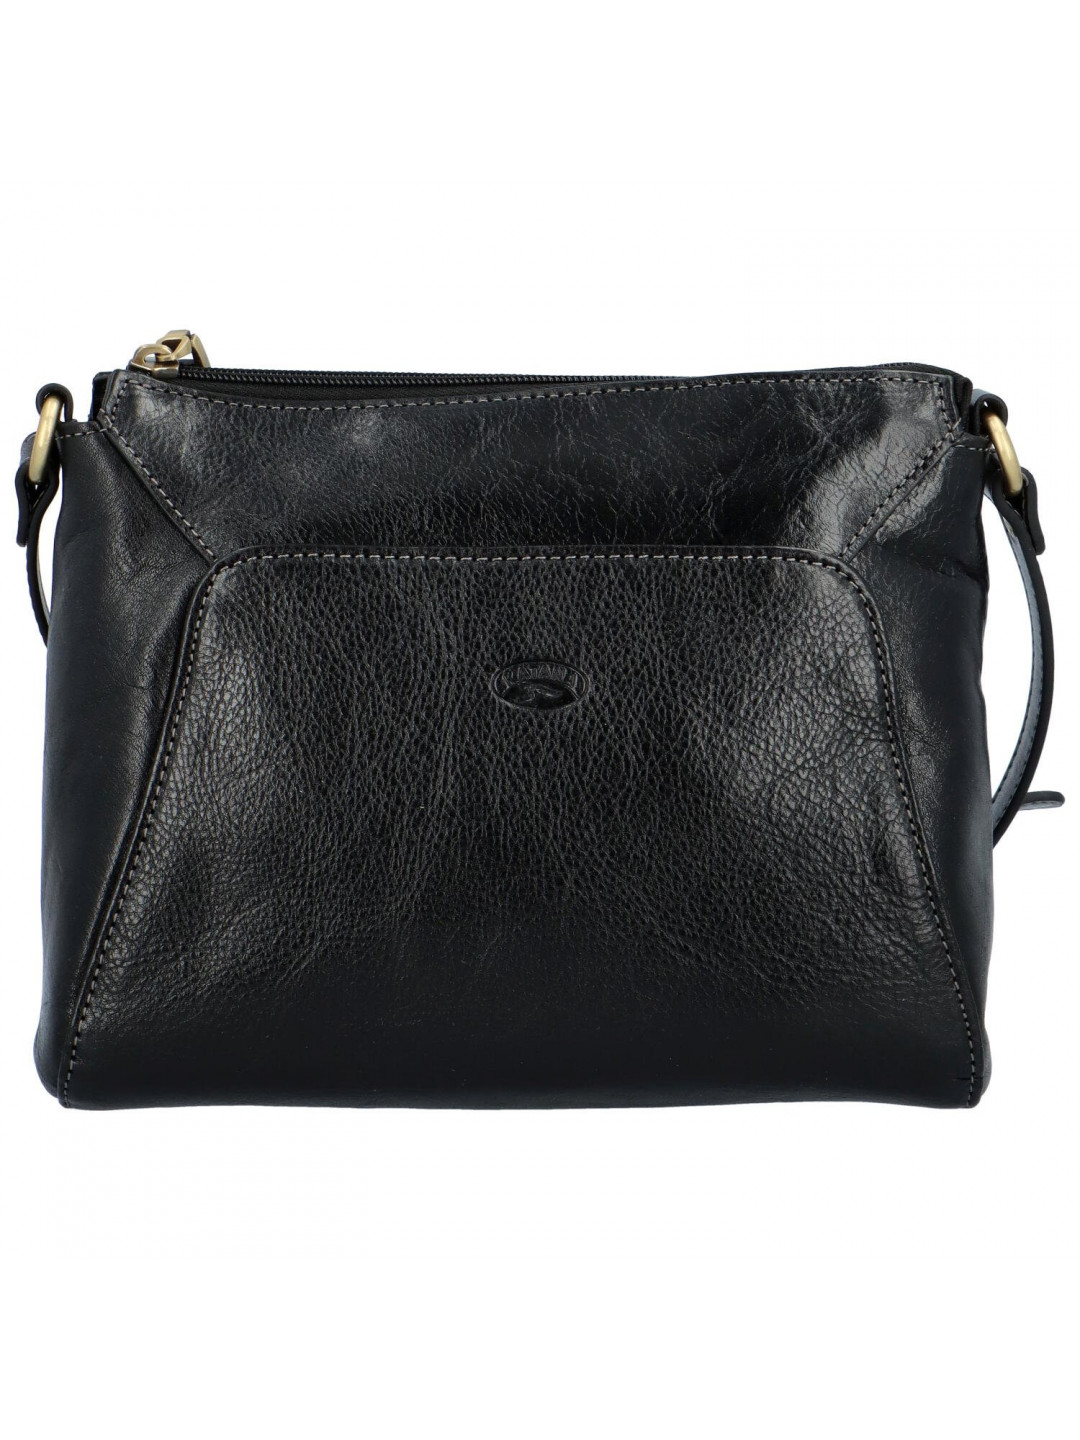 Luxusní dámská kožená kabelka Katana elegant černá